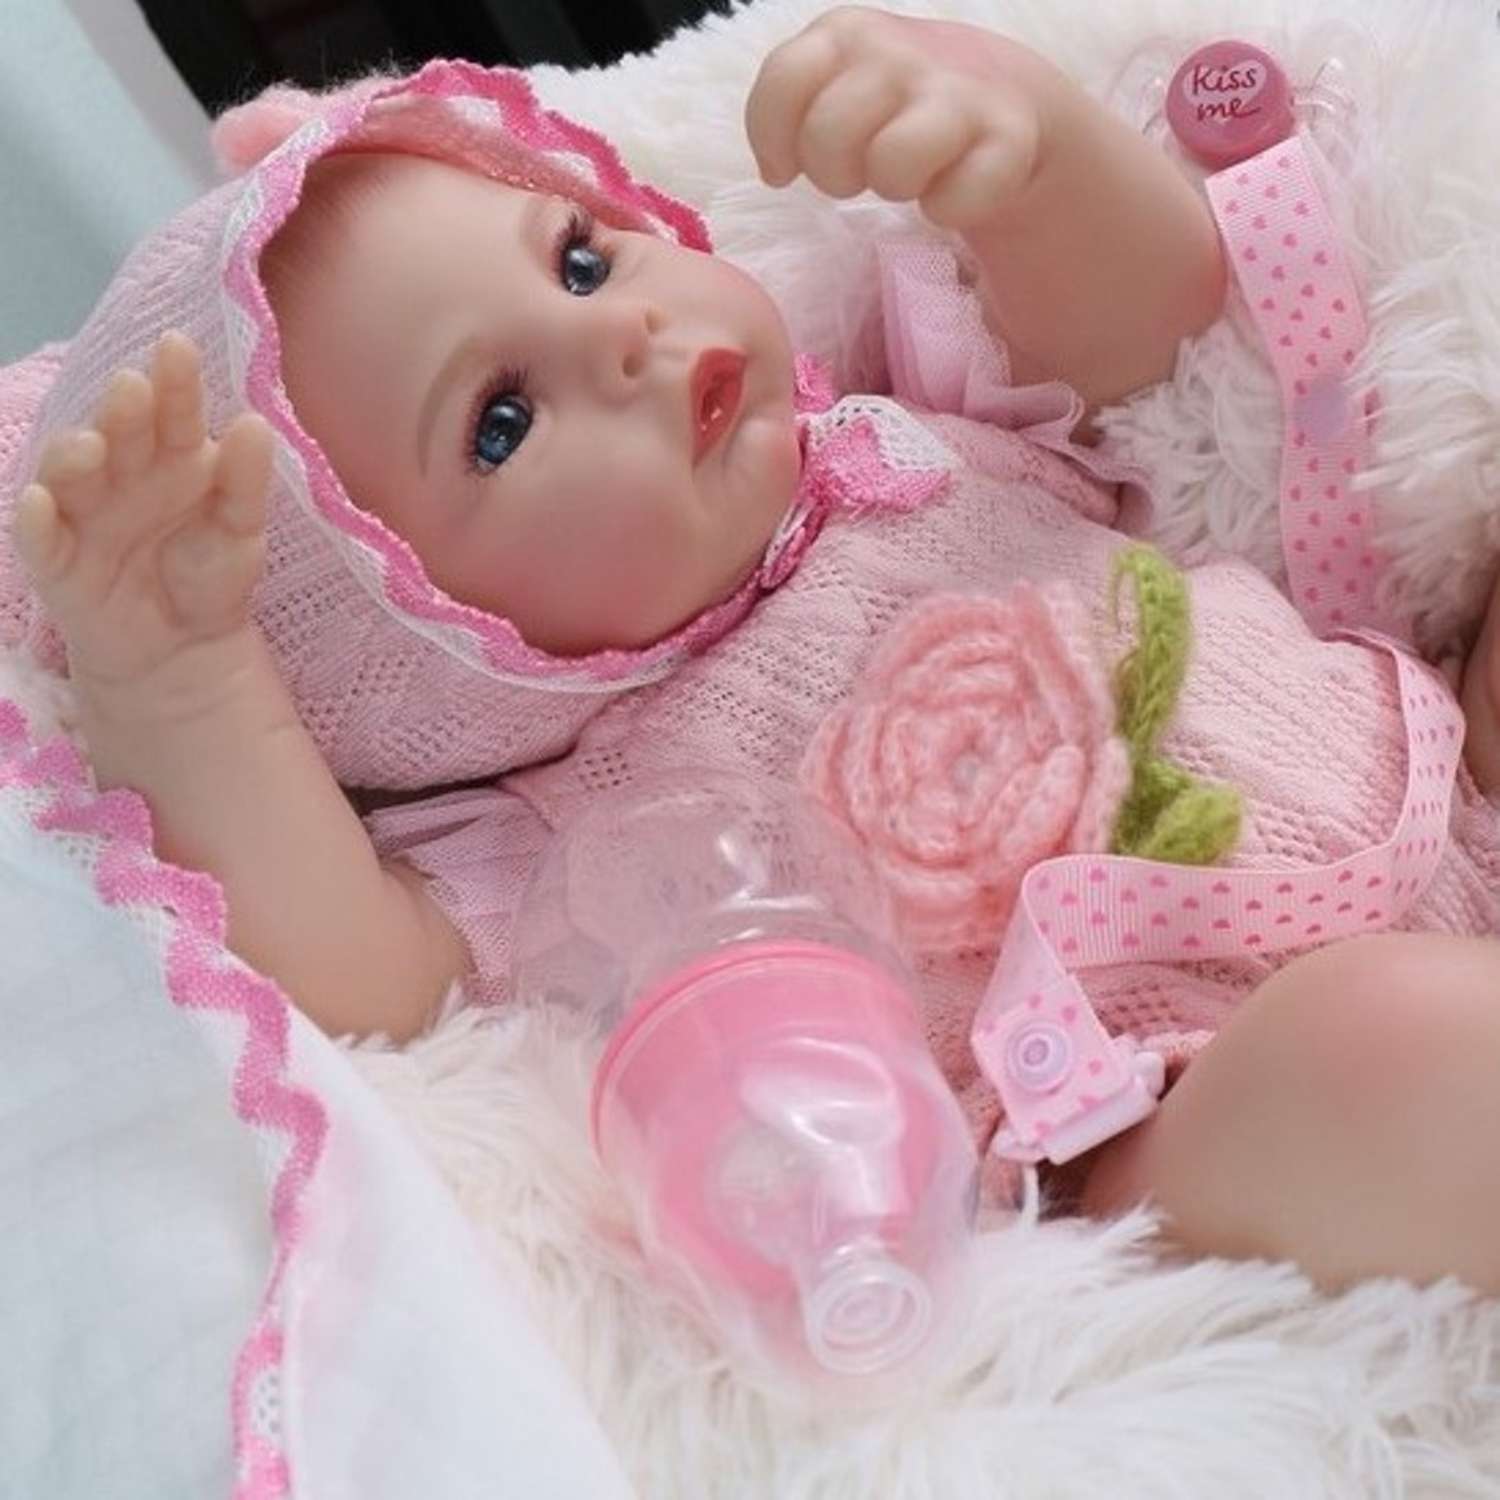 Кукла Реборн QA BABY Ксения пупс с соской набор игрушки для девочки 45 см 42002 - фото 11